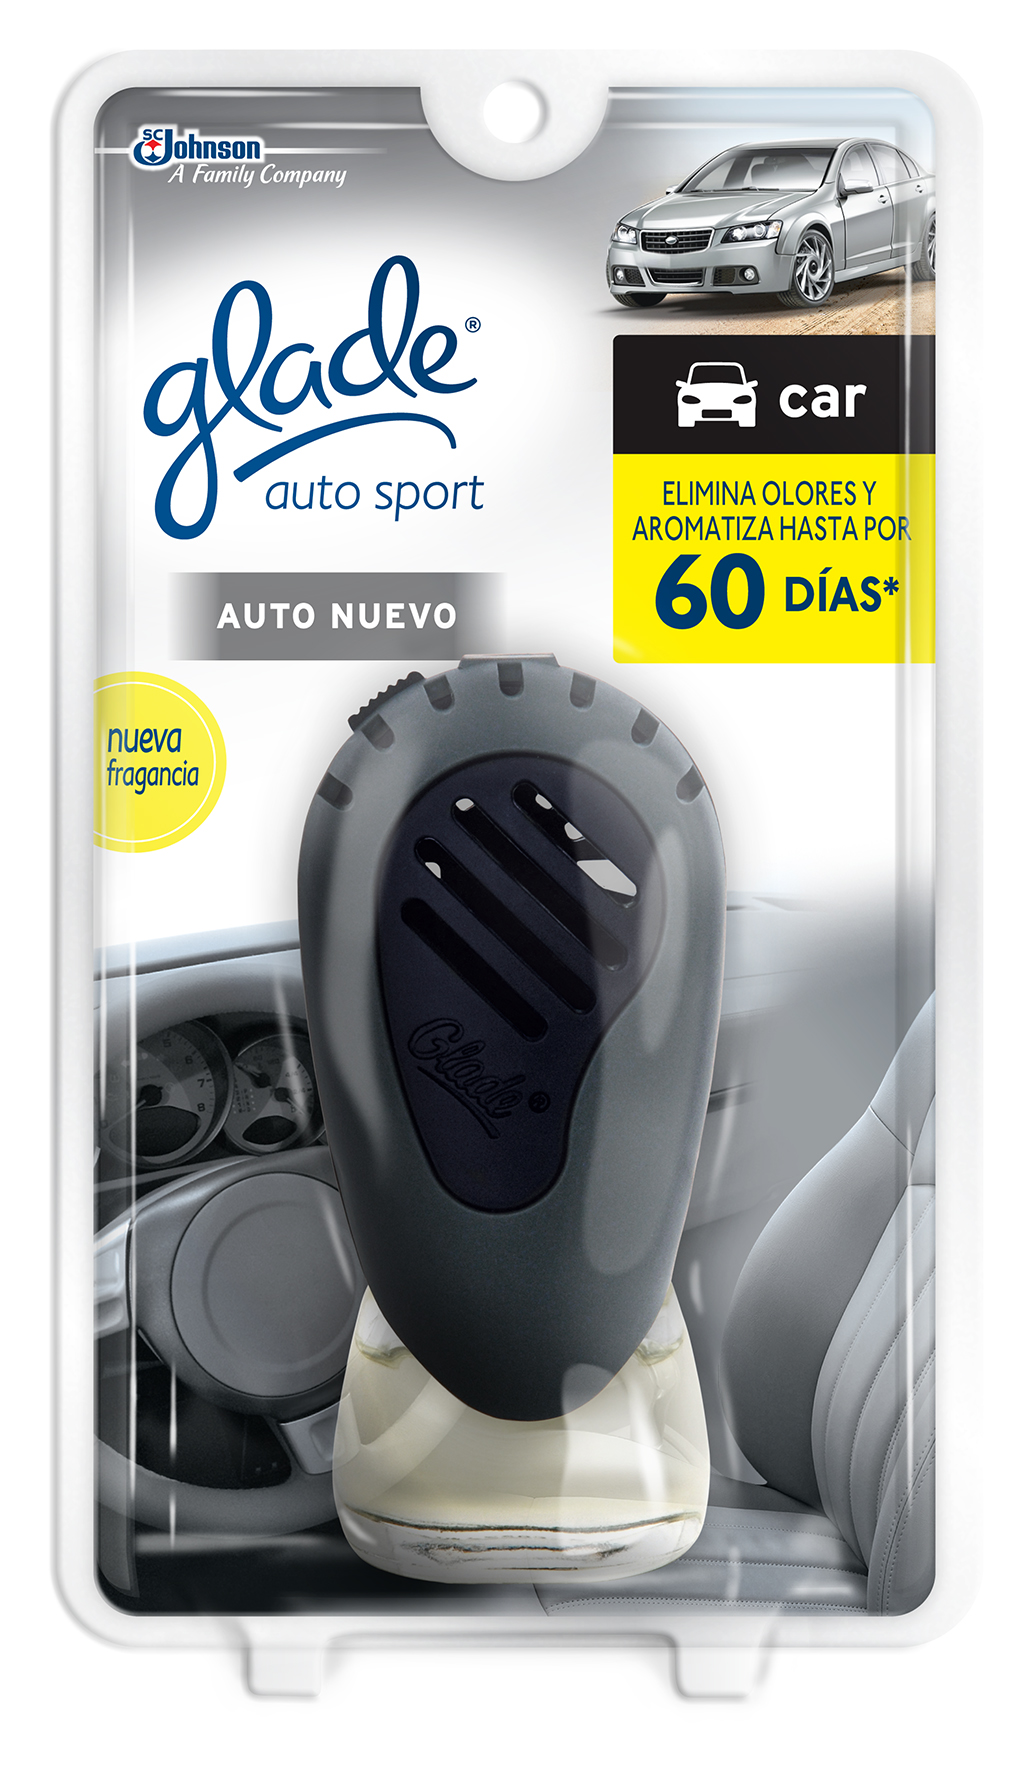 Glade® Auto Sport Auto Nuevo